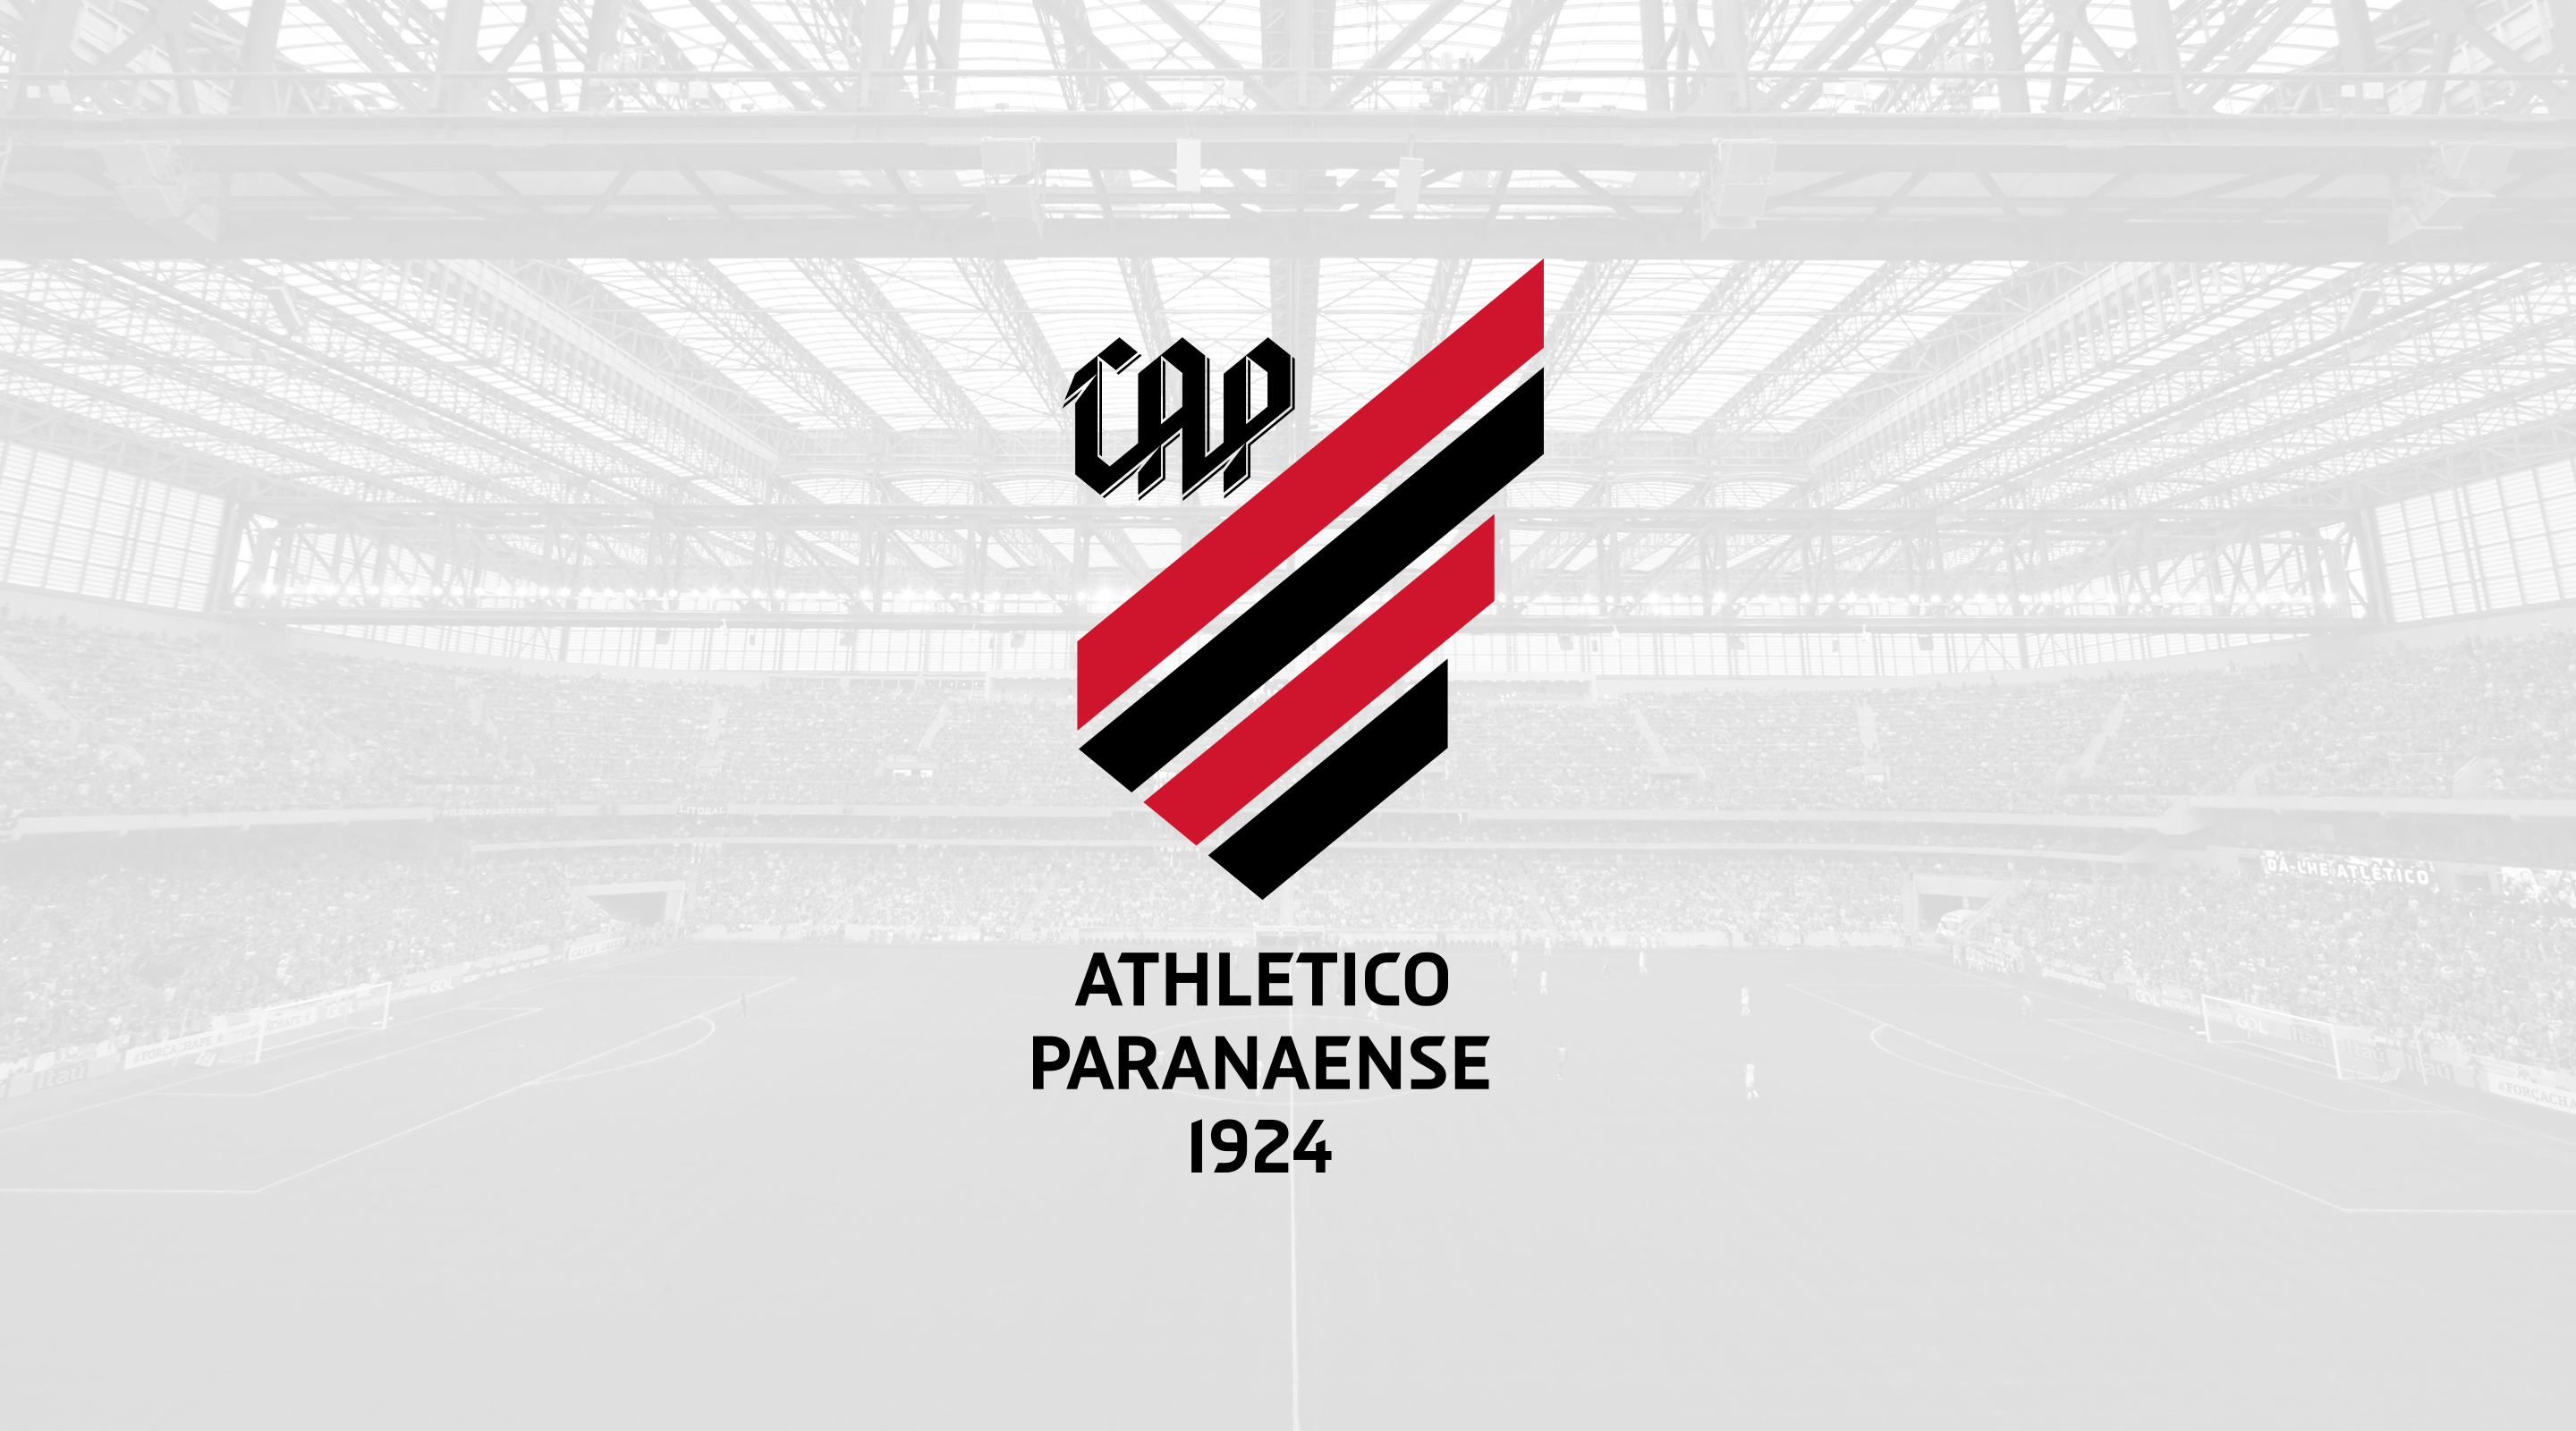 www.athletico.com.br